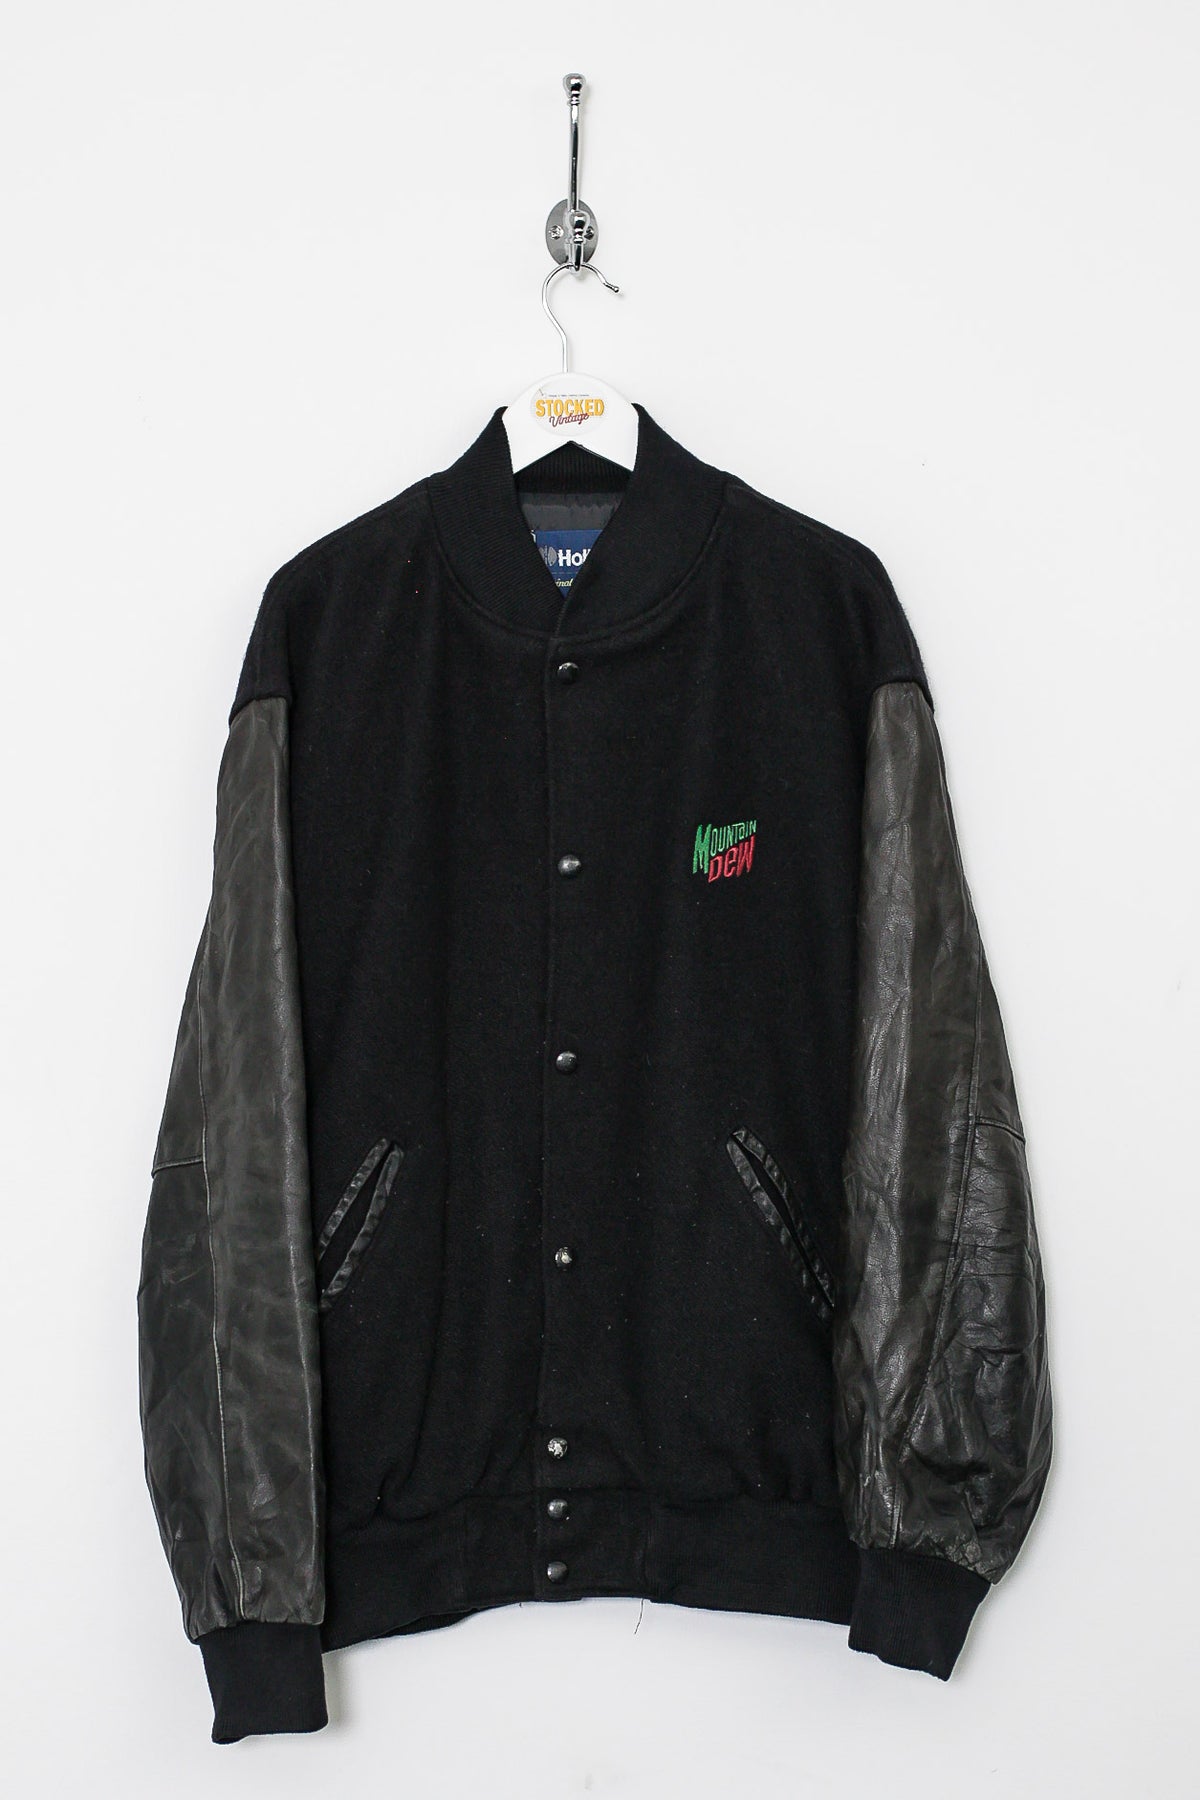 90s Mountain Dew Varsity Jacket (XL)